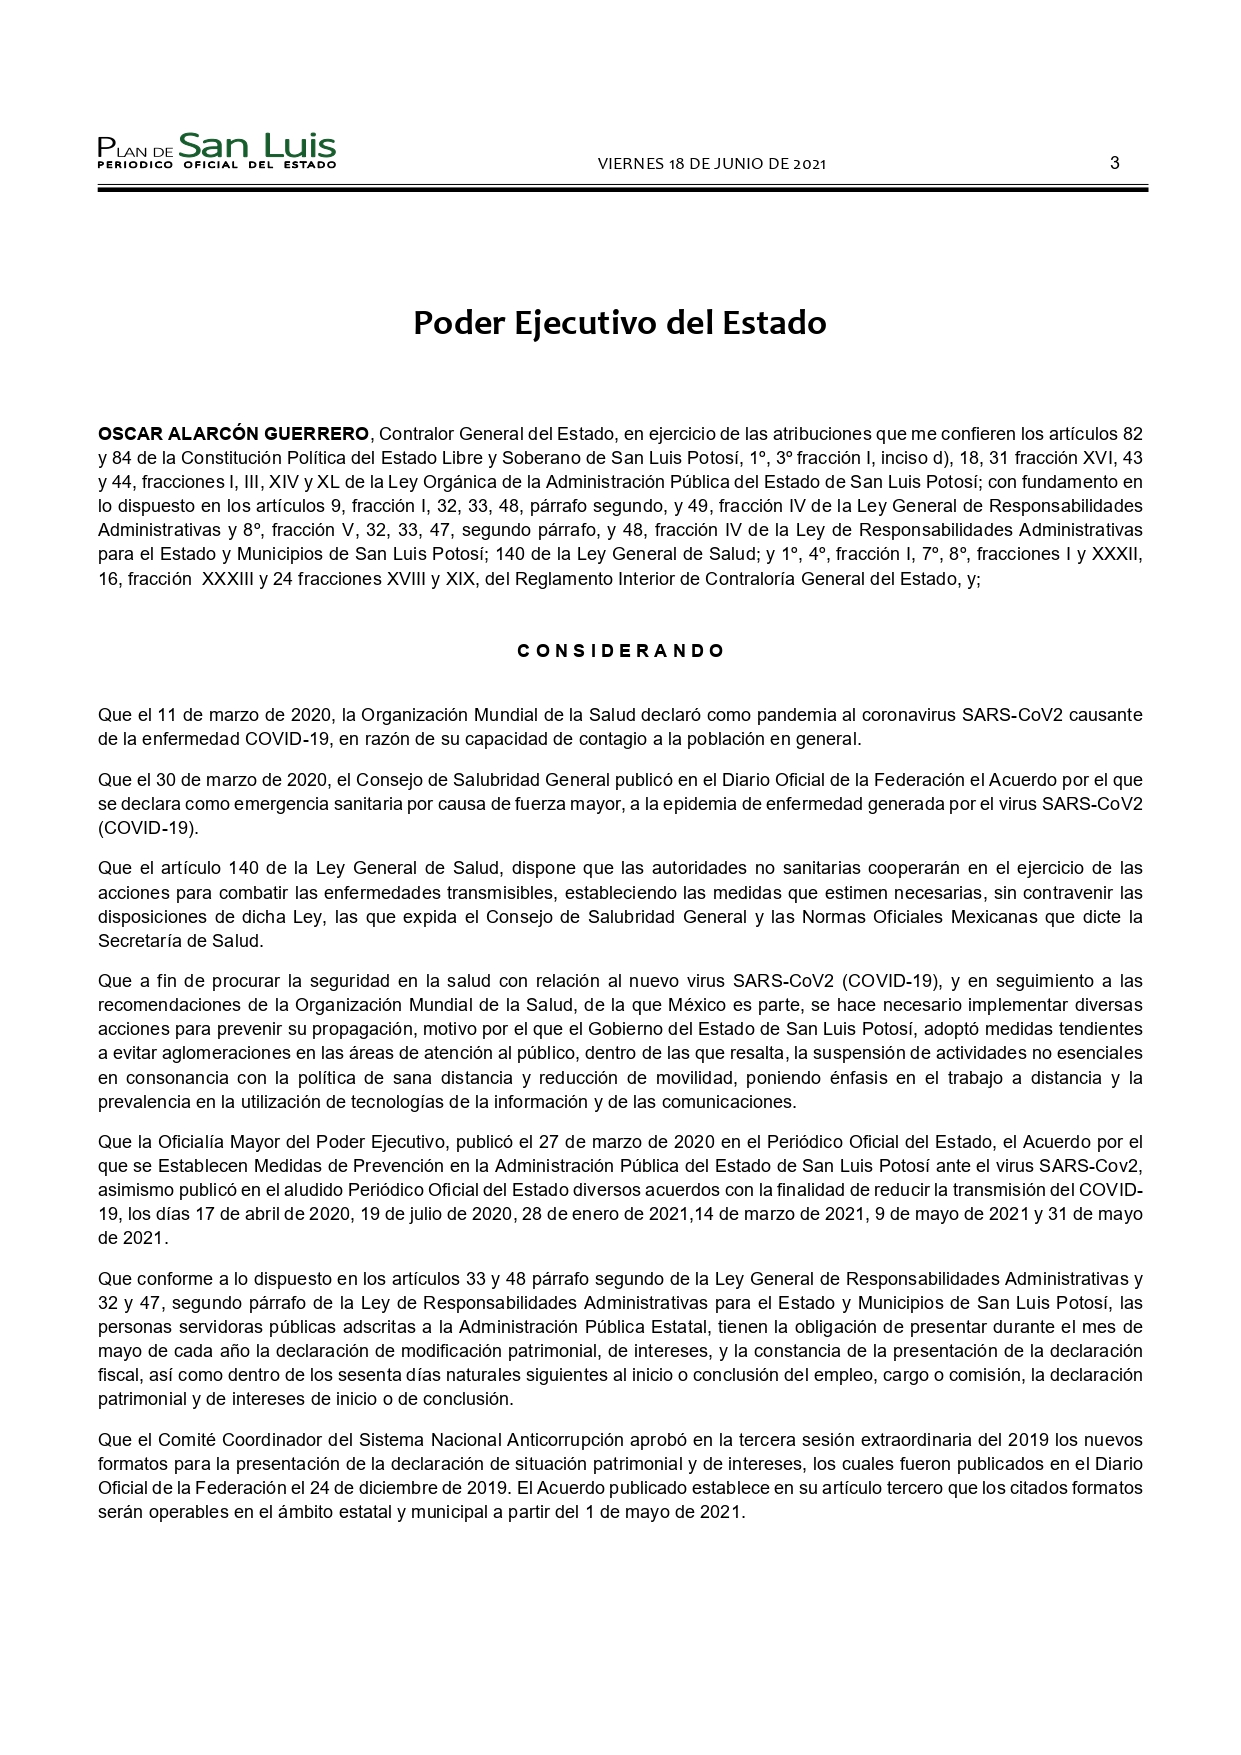 SLP ACUERDO CONTRALORIA GENERAL MODIFICA PLAZO DE DECLARACIONES (18-JUN-2021) (1)_page-0003.jpg